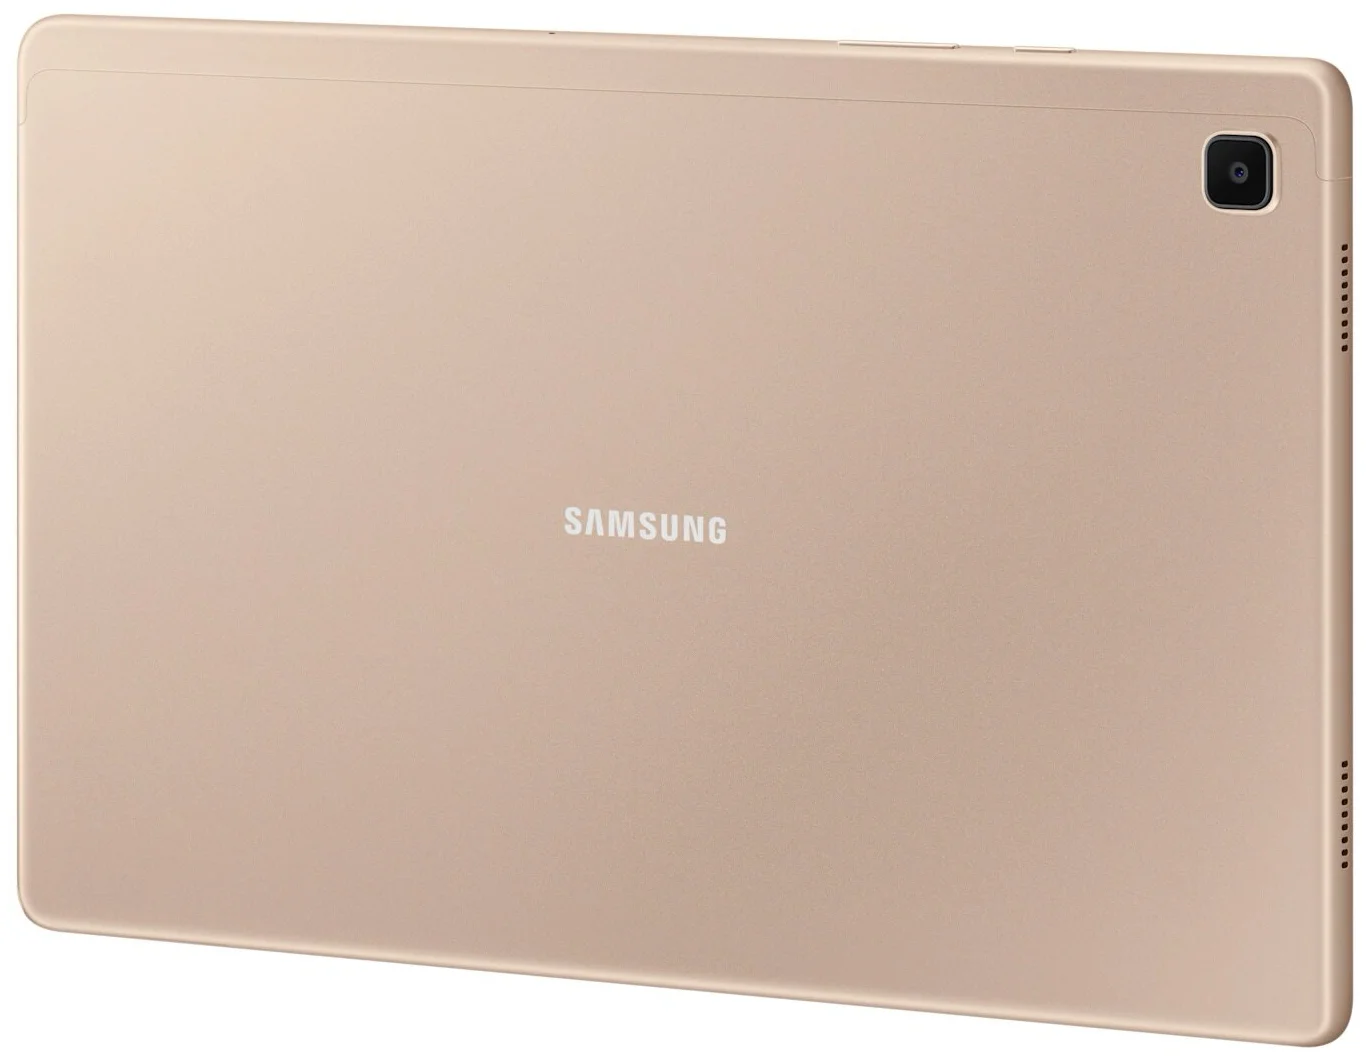 Samsung Galaxy Tab A7 10.4 SM-T500 32GB Wi-Fi (2020) - беспроводные интерфейсы: WiFi 802.11ac, Bluetooth 5.0